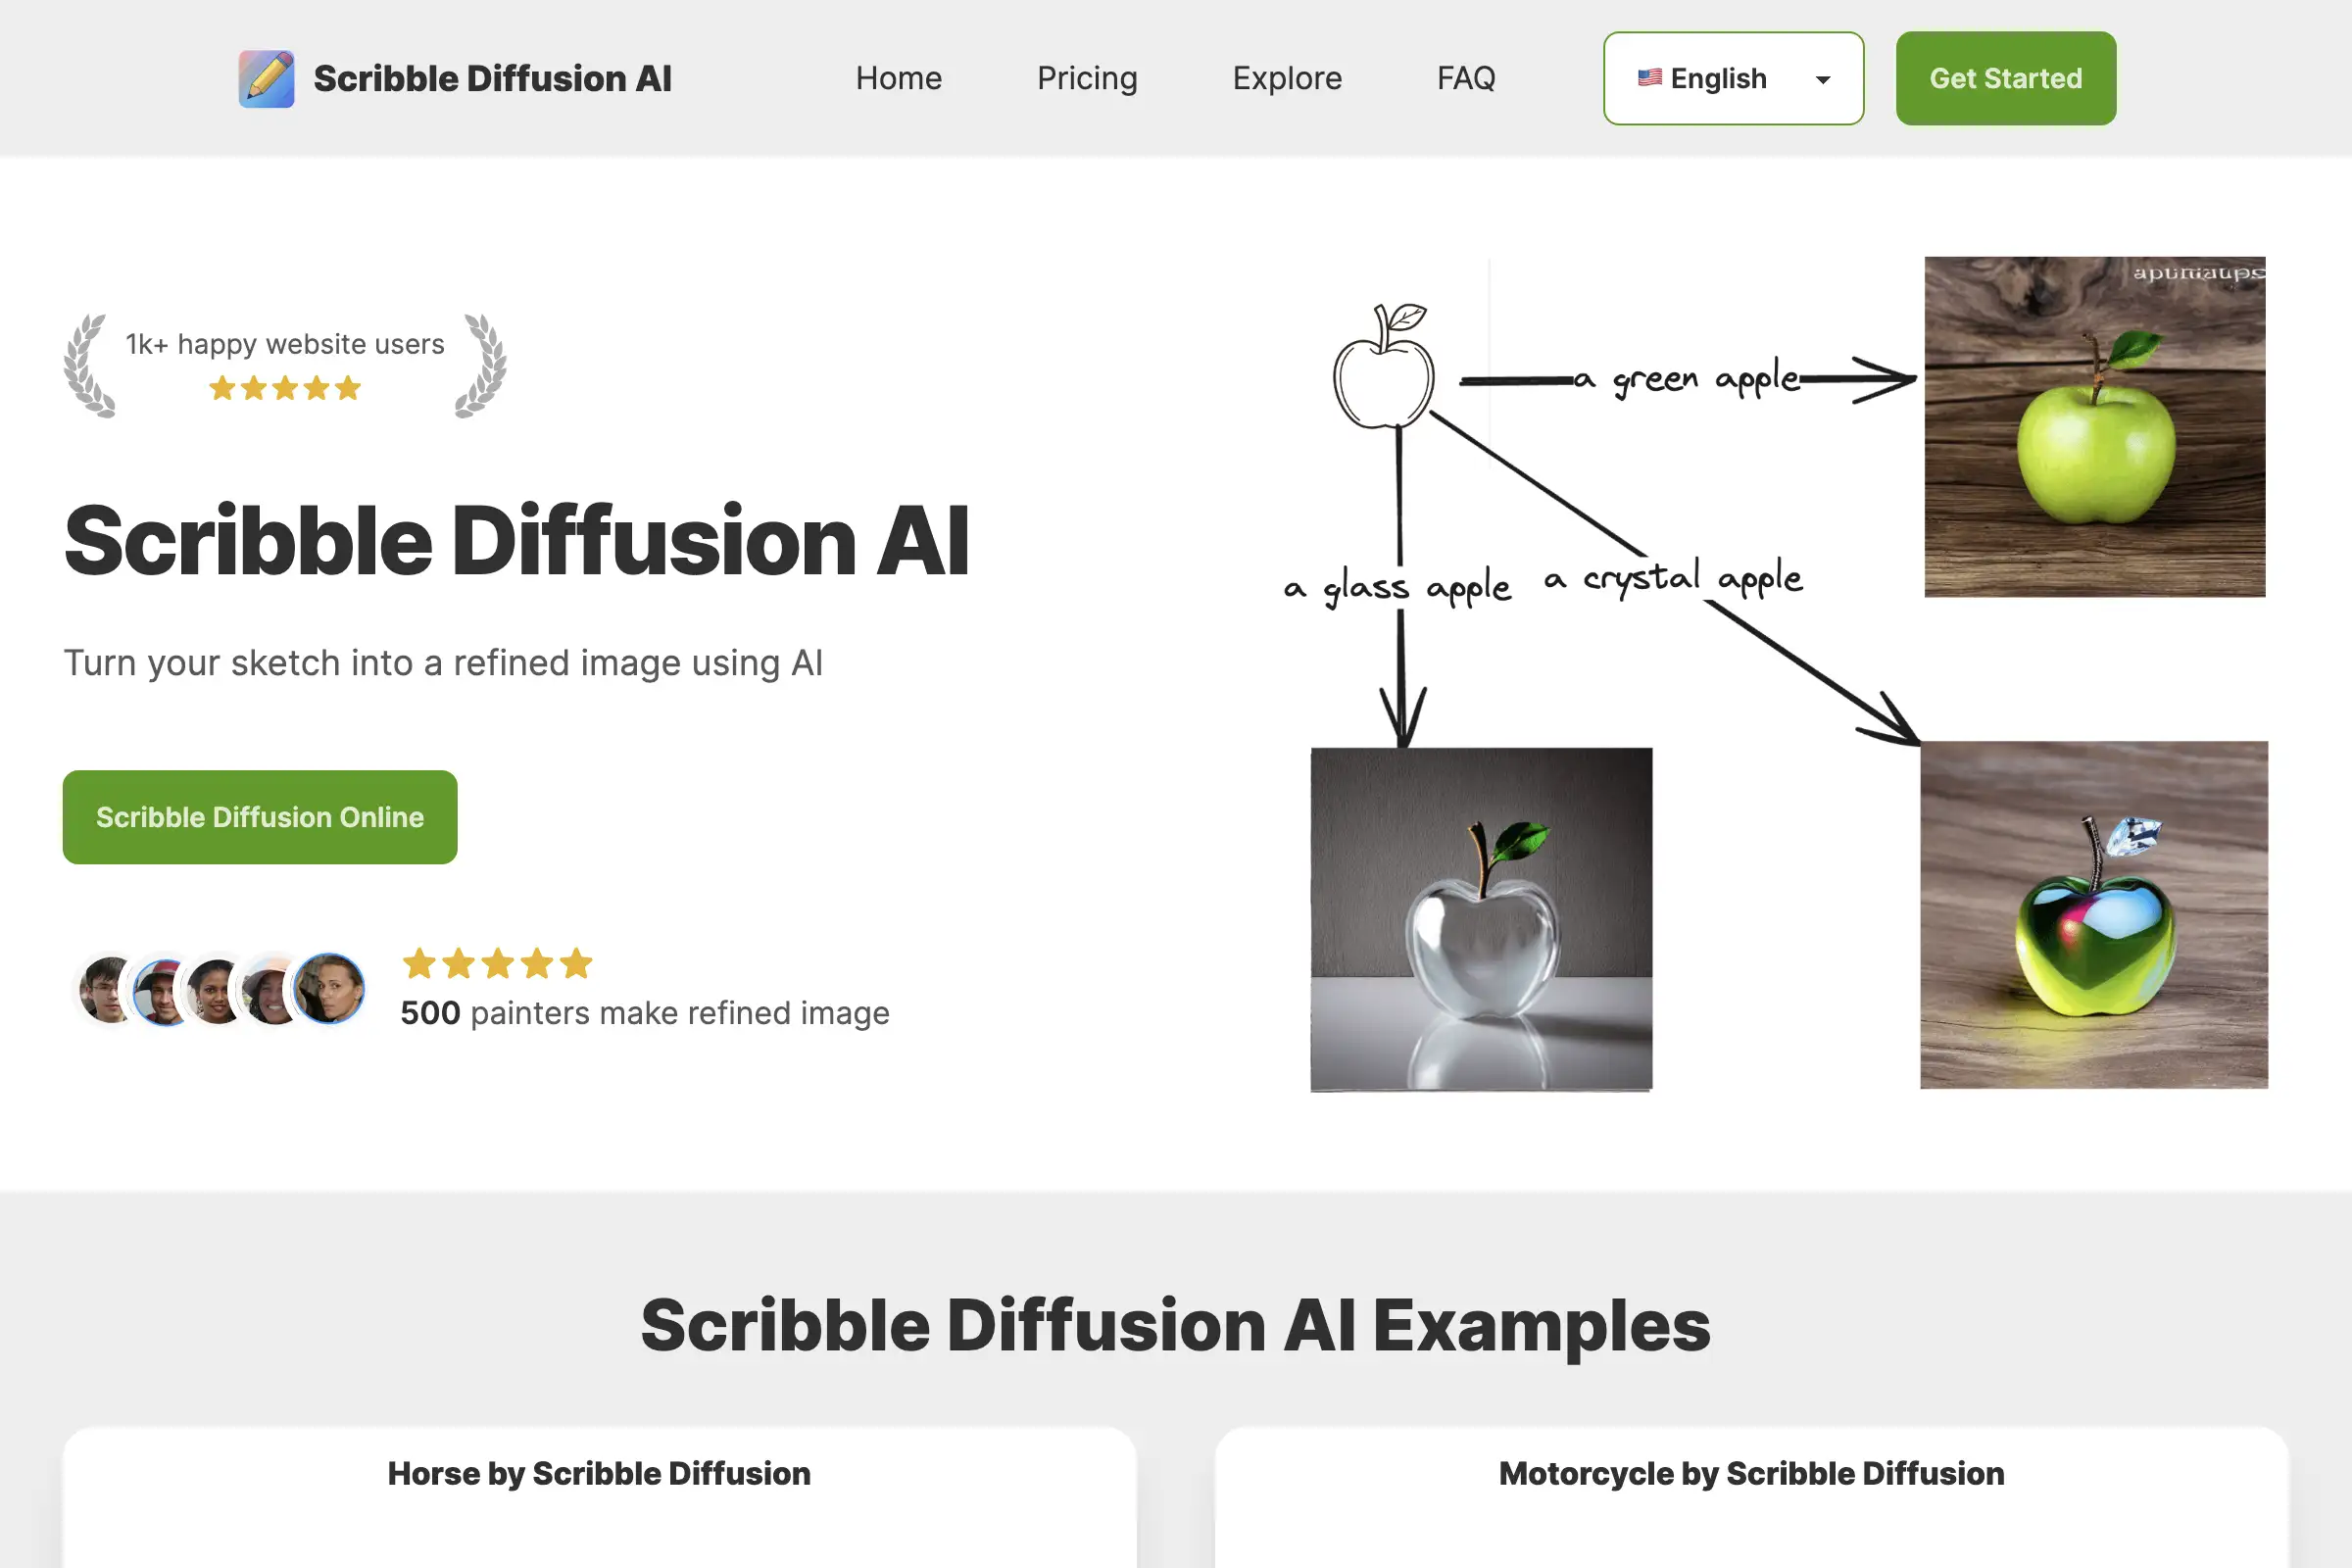 Scribble Diffusion AI